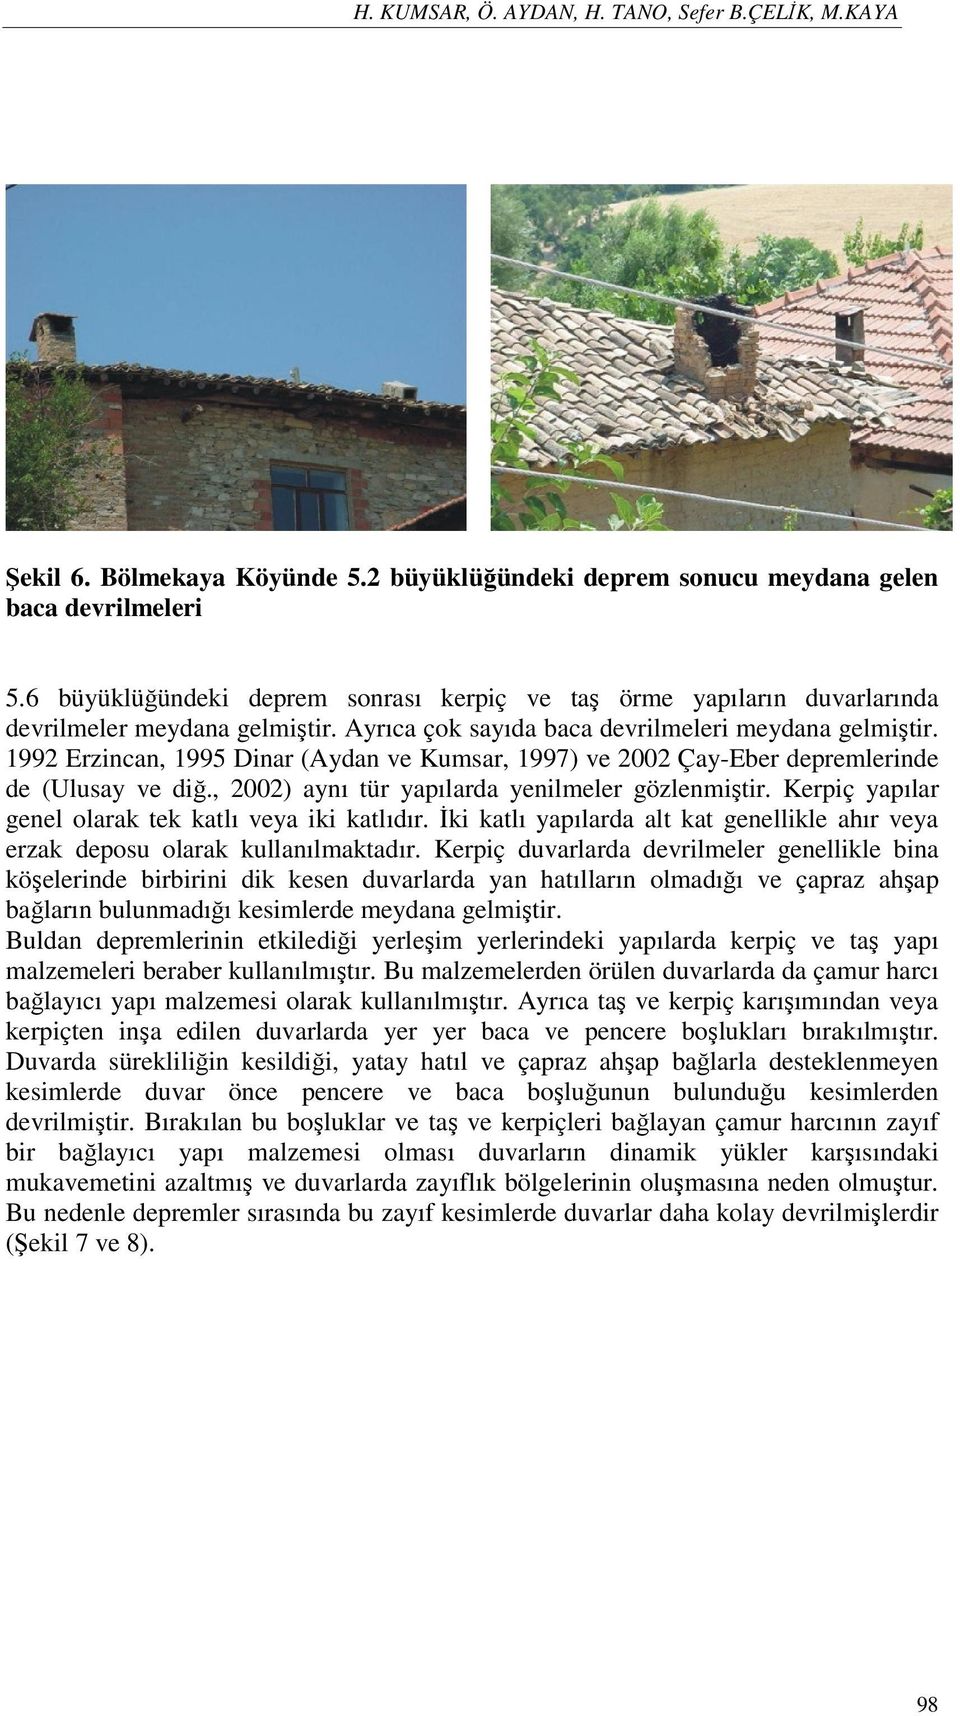 1992 Erzincan, 1995 Dinar (Aydan ve Kumsar, 1997) ve 2002 Çay-Eber depremlerinde de (Ulusay ve diğ., 2002) aynı tür yapılarda yenilmeler gözlenmiştir.